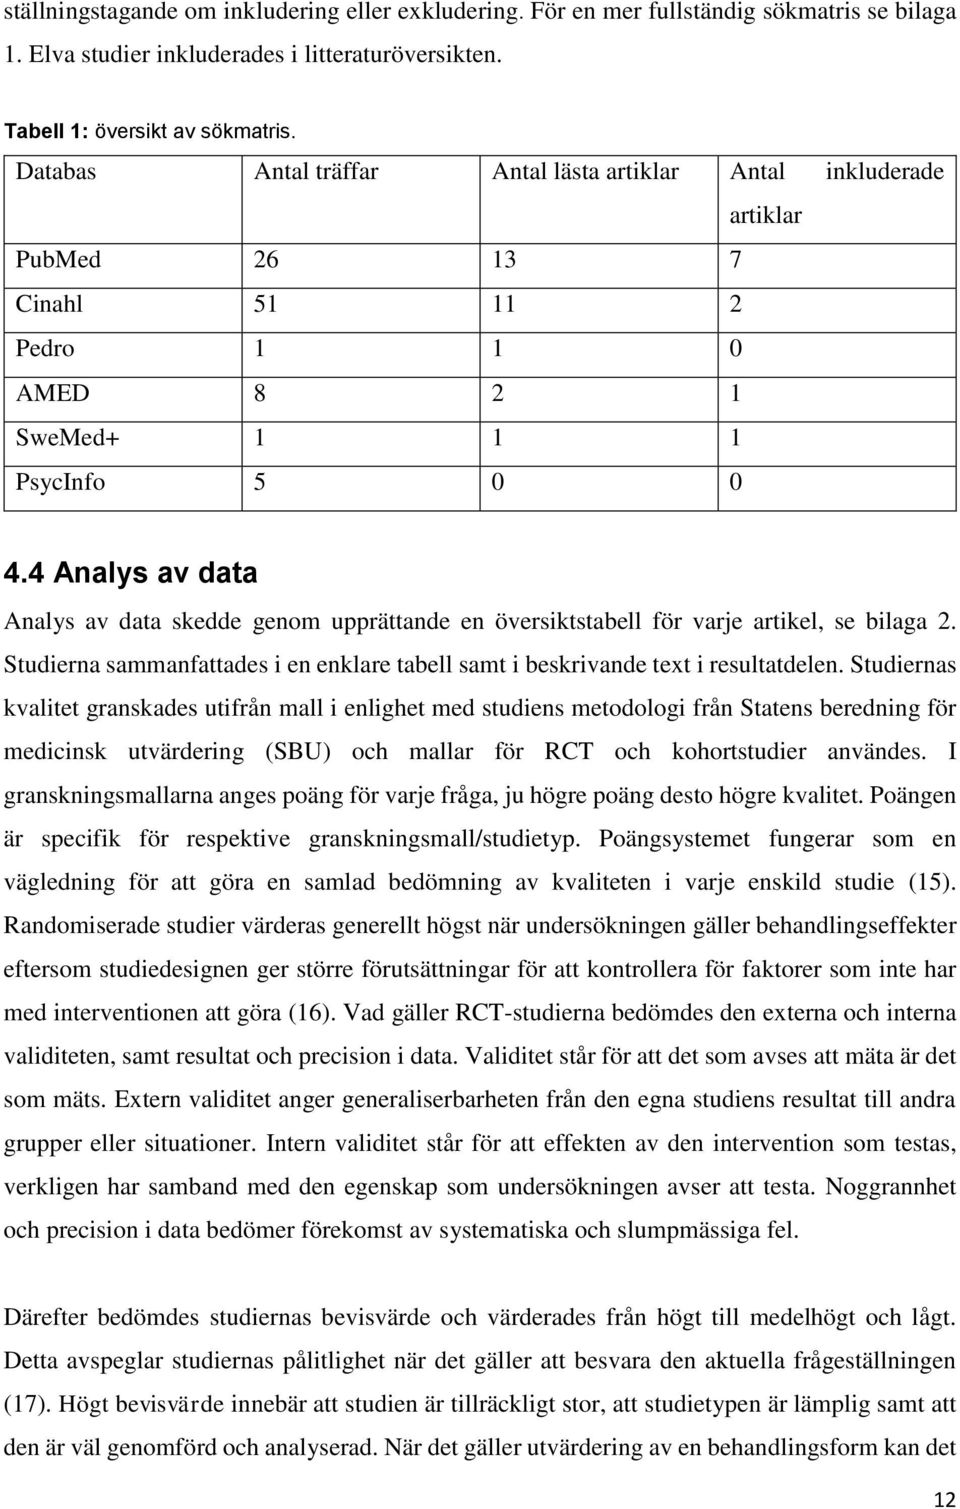 4 Analys av data Analys av data skedde genom upprättande en översiktstabell för varje artikel, se bilaga 2. Studierna sammanfattades i en enklare tabell samt i beskrivande text i resultatdelen.